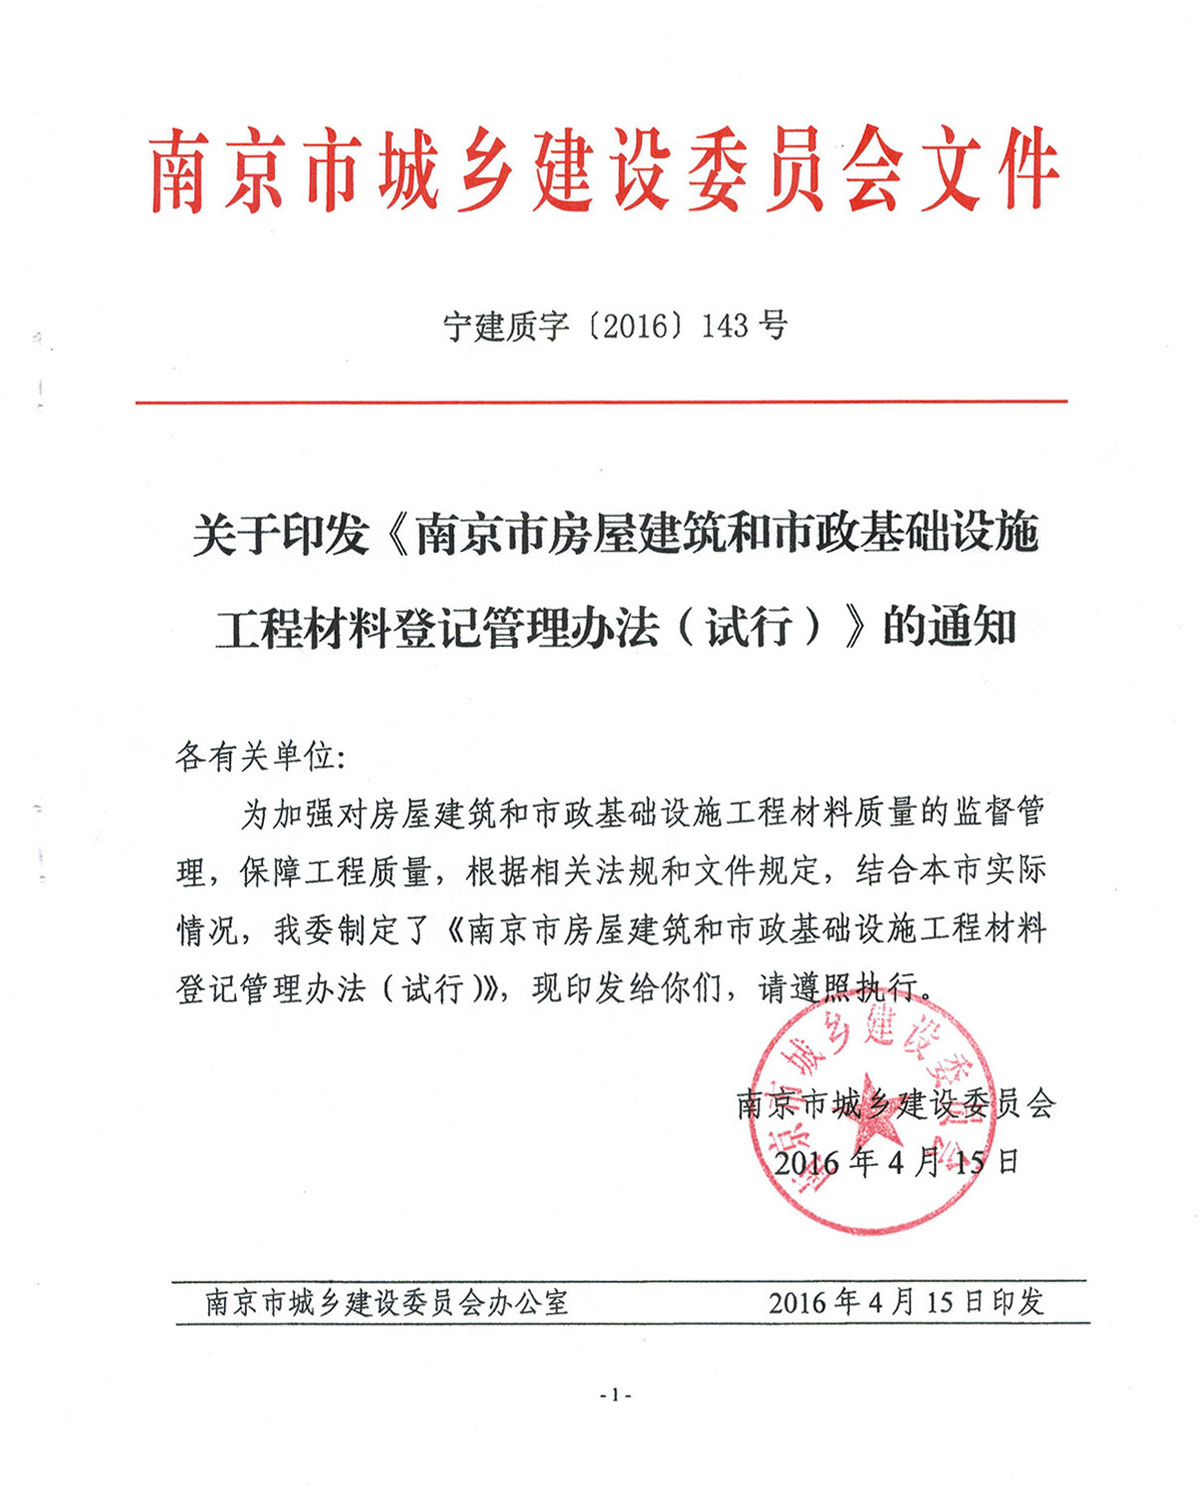 关于印发《南京市房屋建筑工程和市政基础设施工程材料登记管理办法（试行）》的通知(1)-1.jpg